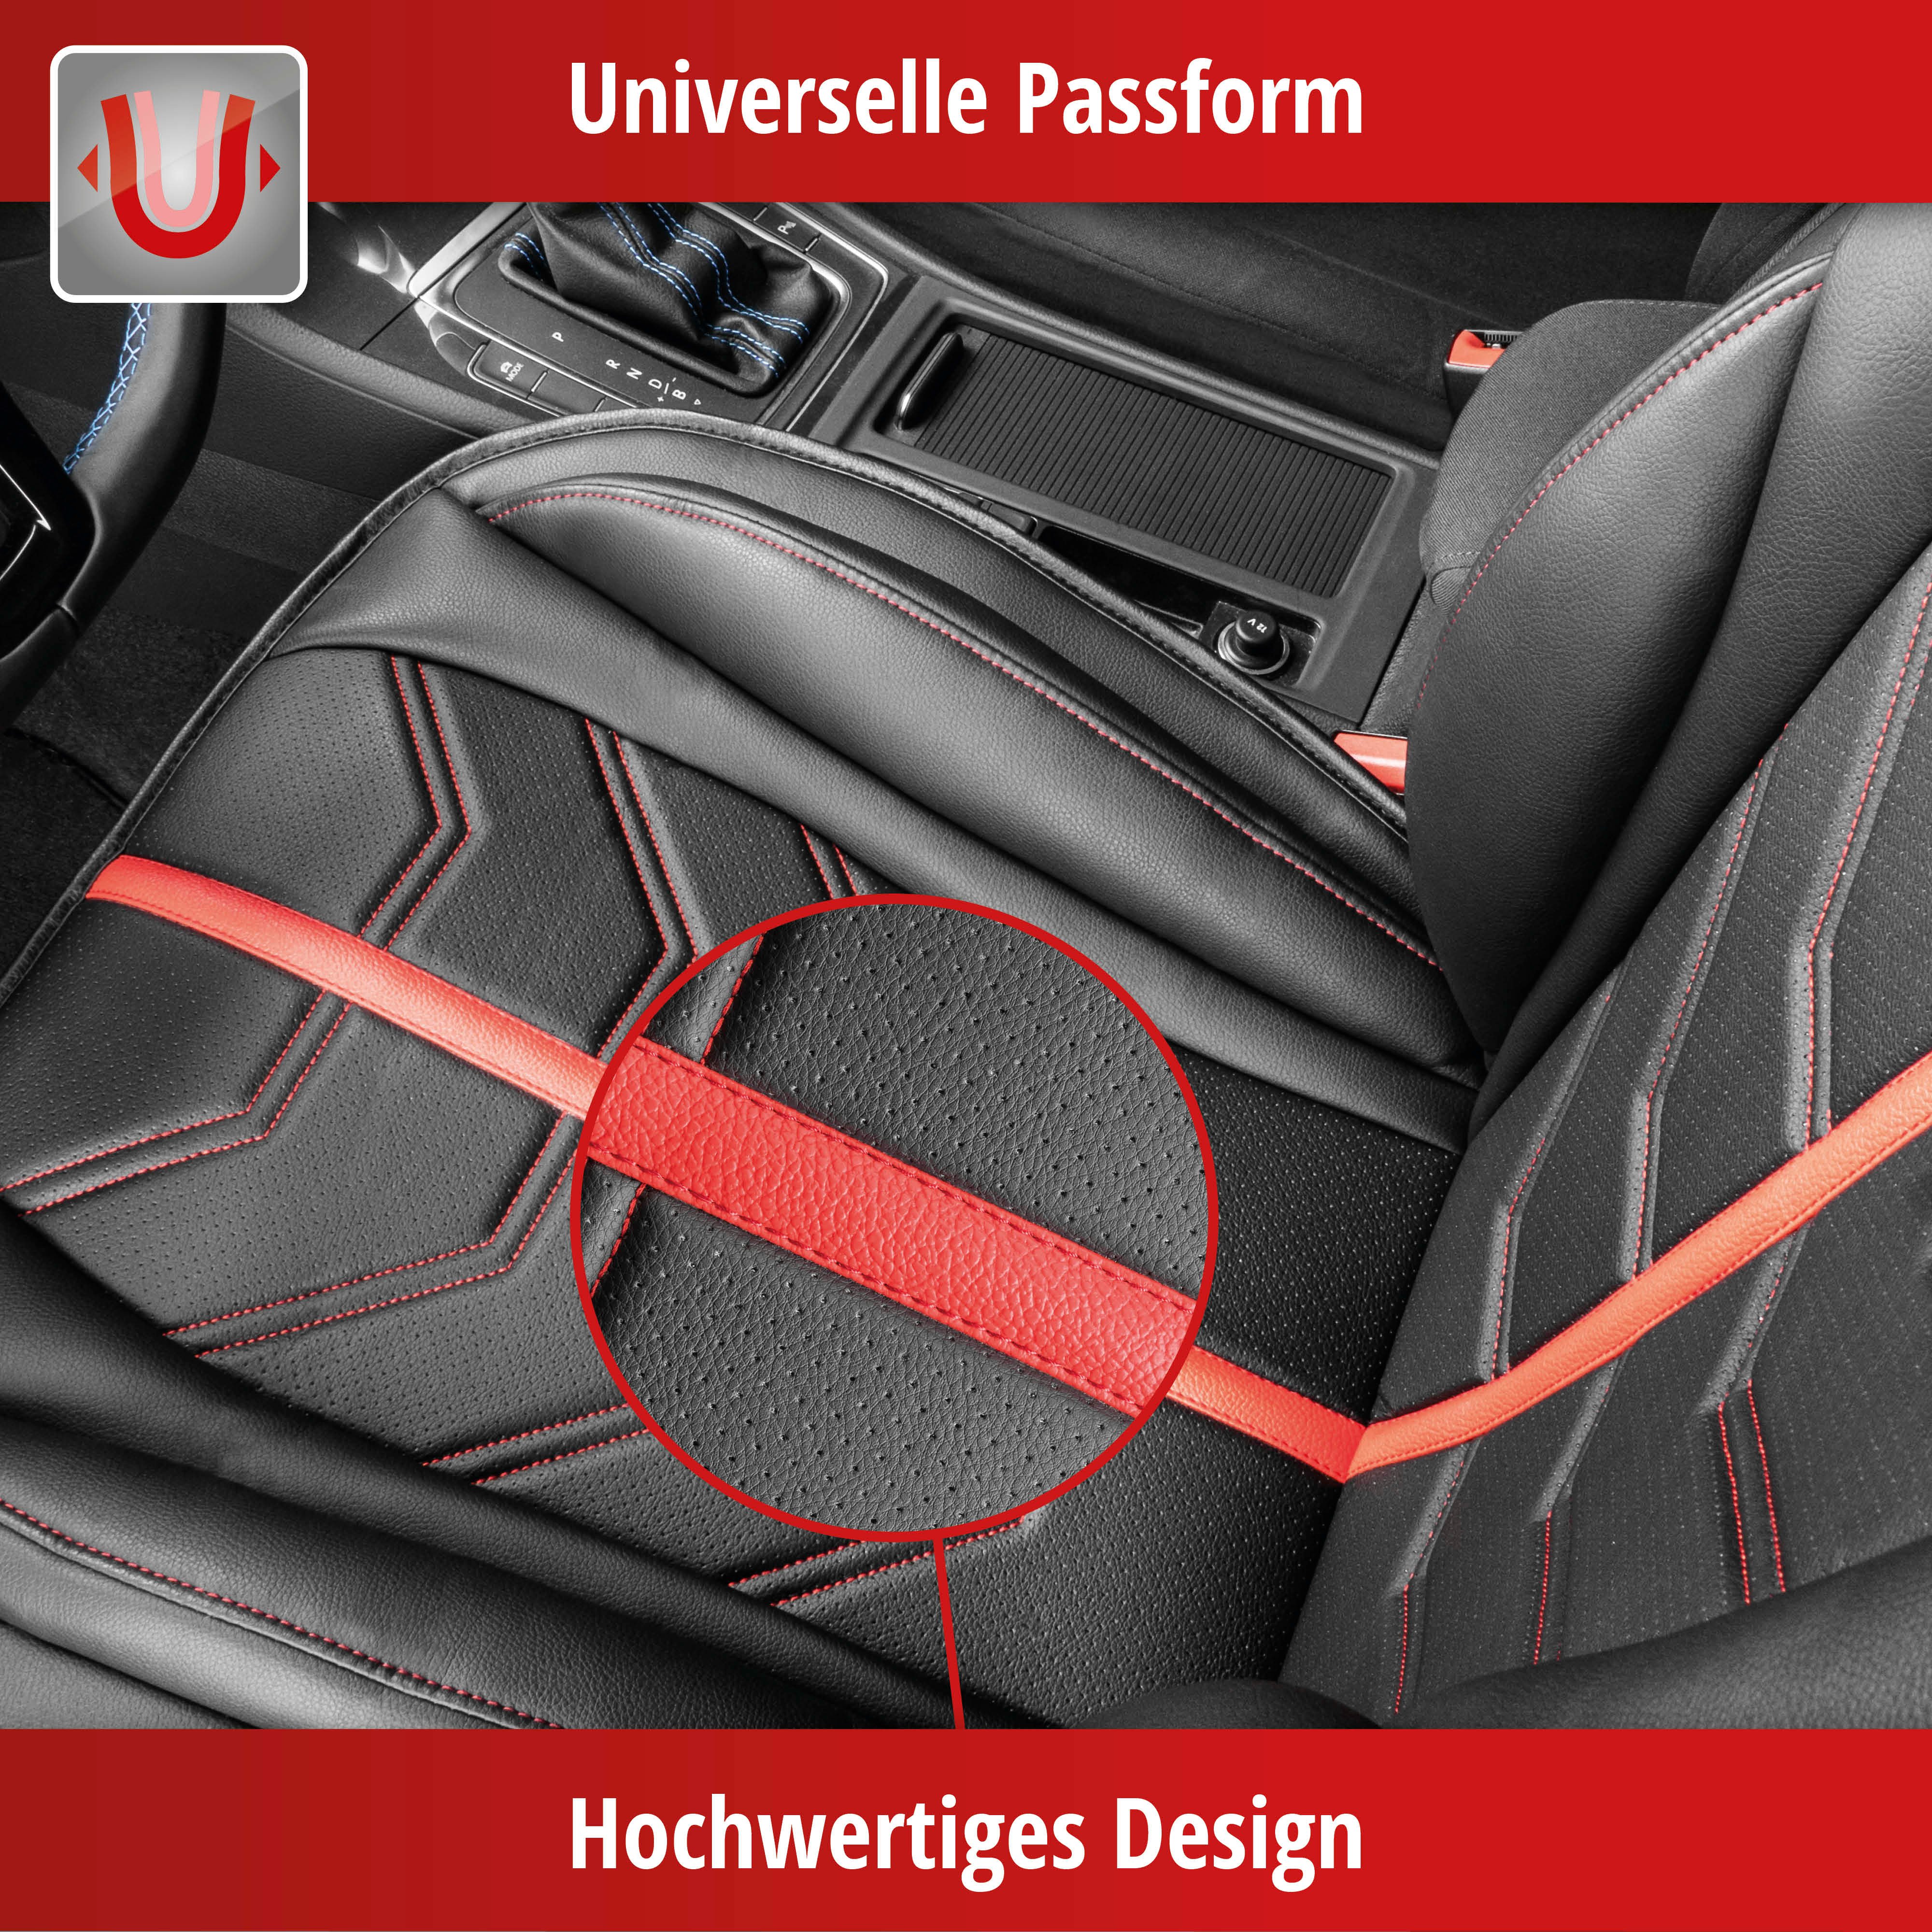 PKW-Sitzauflage Kimi, Auto-Sitzaufleger schwarz/rot